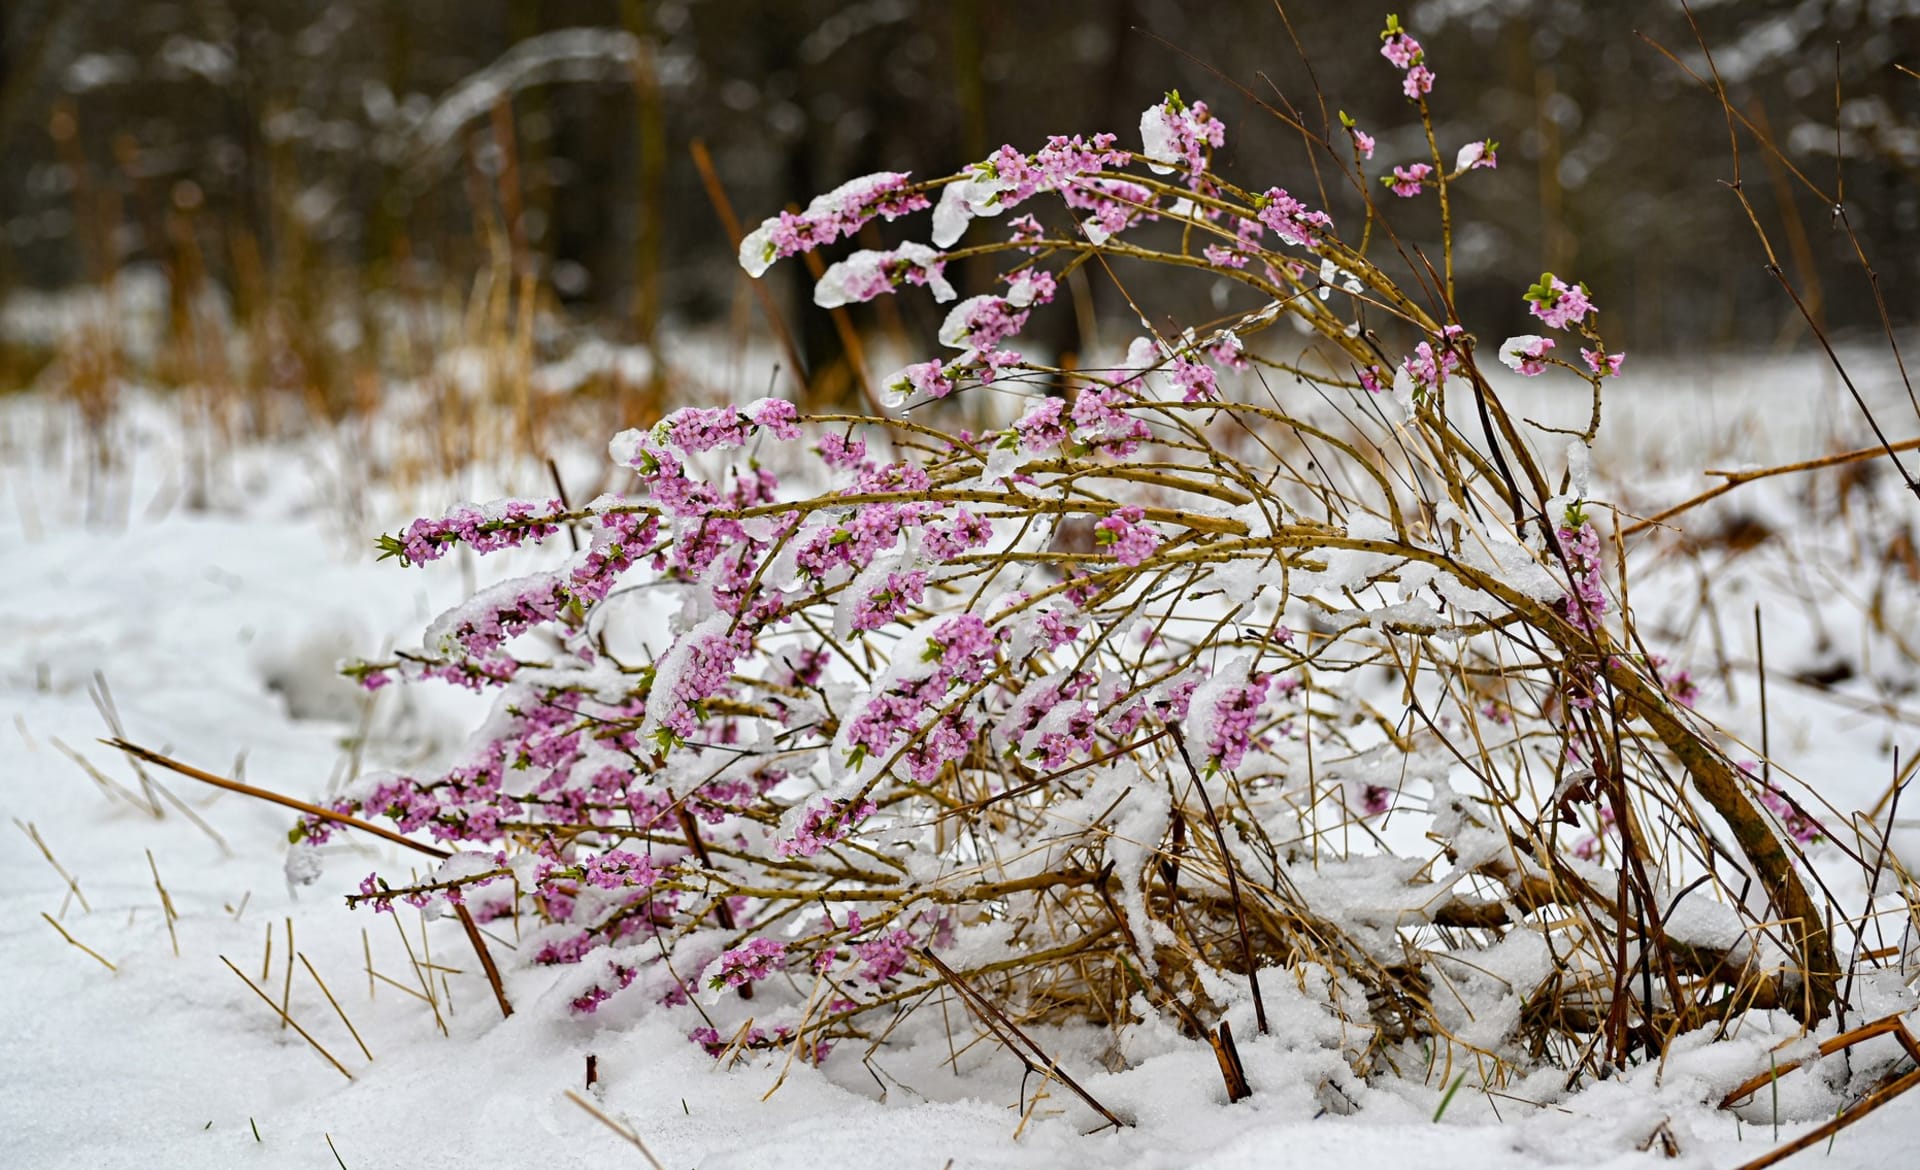 Lýkovec jedovatý (Daphne mezereum): Větve jsou hodně ohebné a nepolámou se ani pod náporem sněhu.